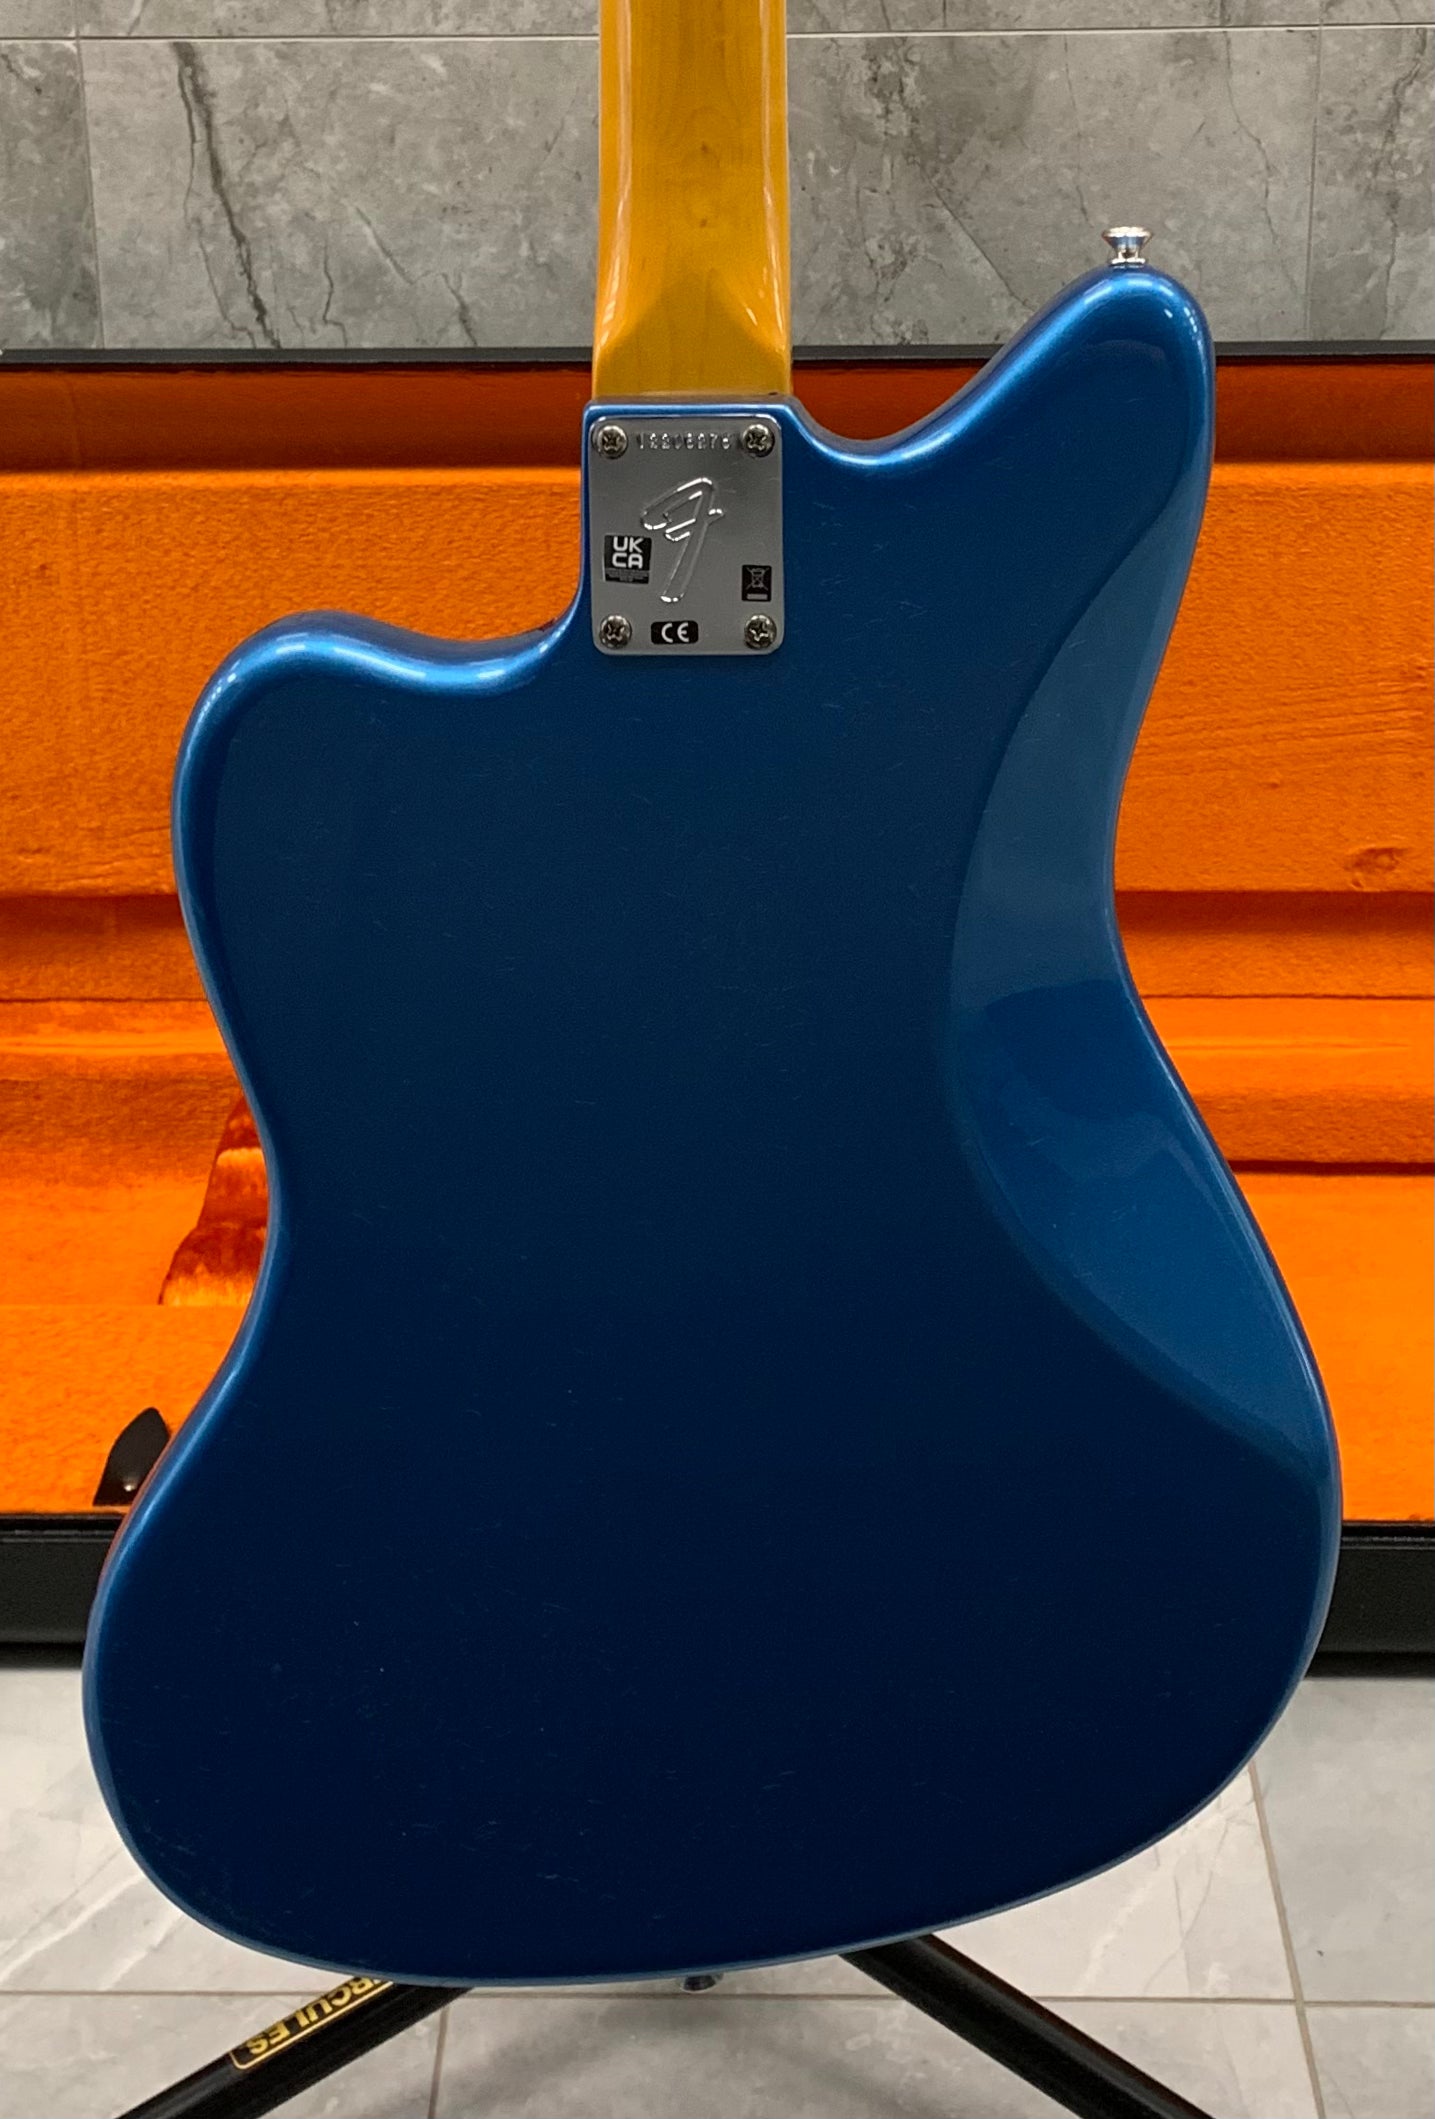 Fender American Vintage II 1966 Jazzmaster Rosewood Fingerboard, Lake Placid Blue 0110340802 SERIAL NUMBER V2208275 - 8.0 LBS